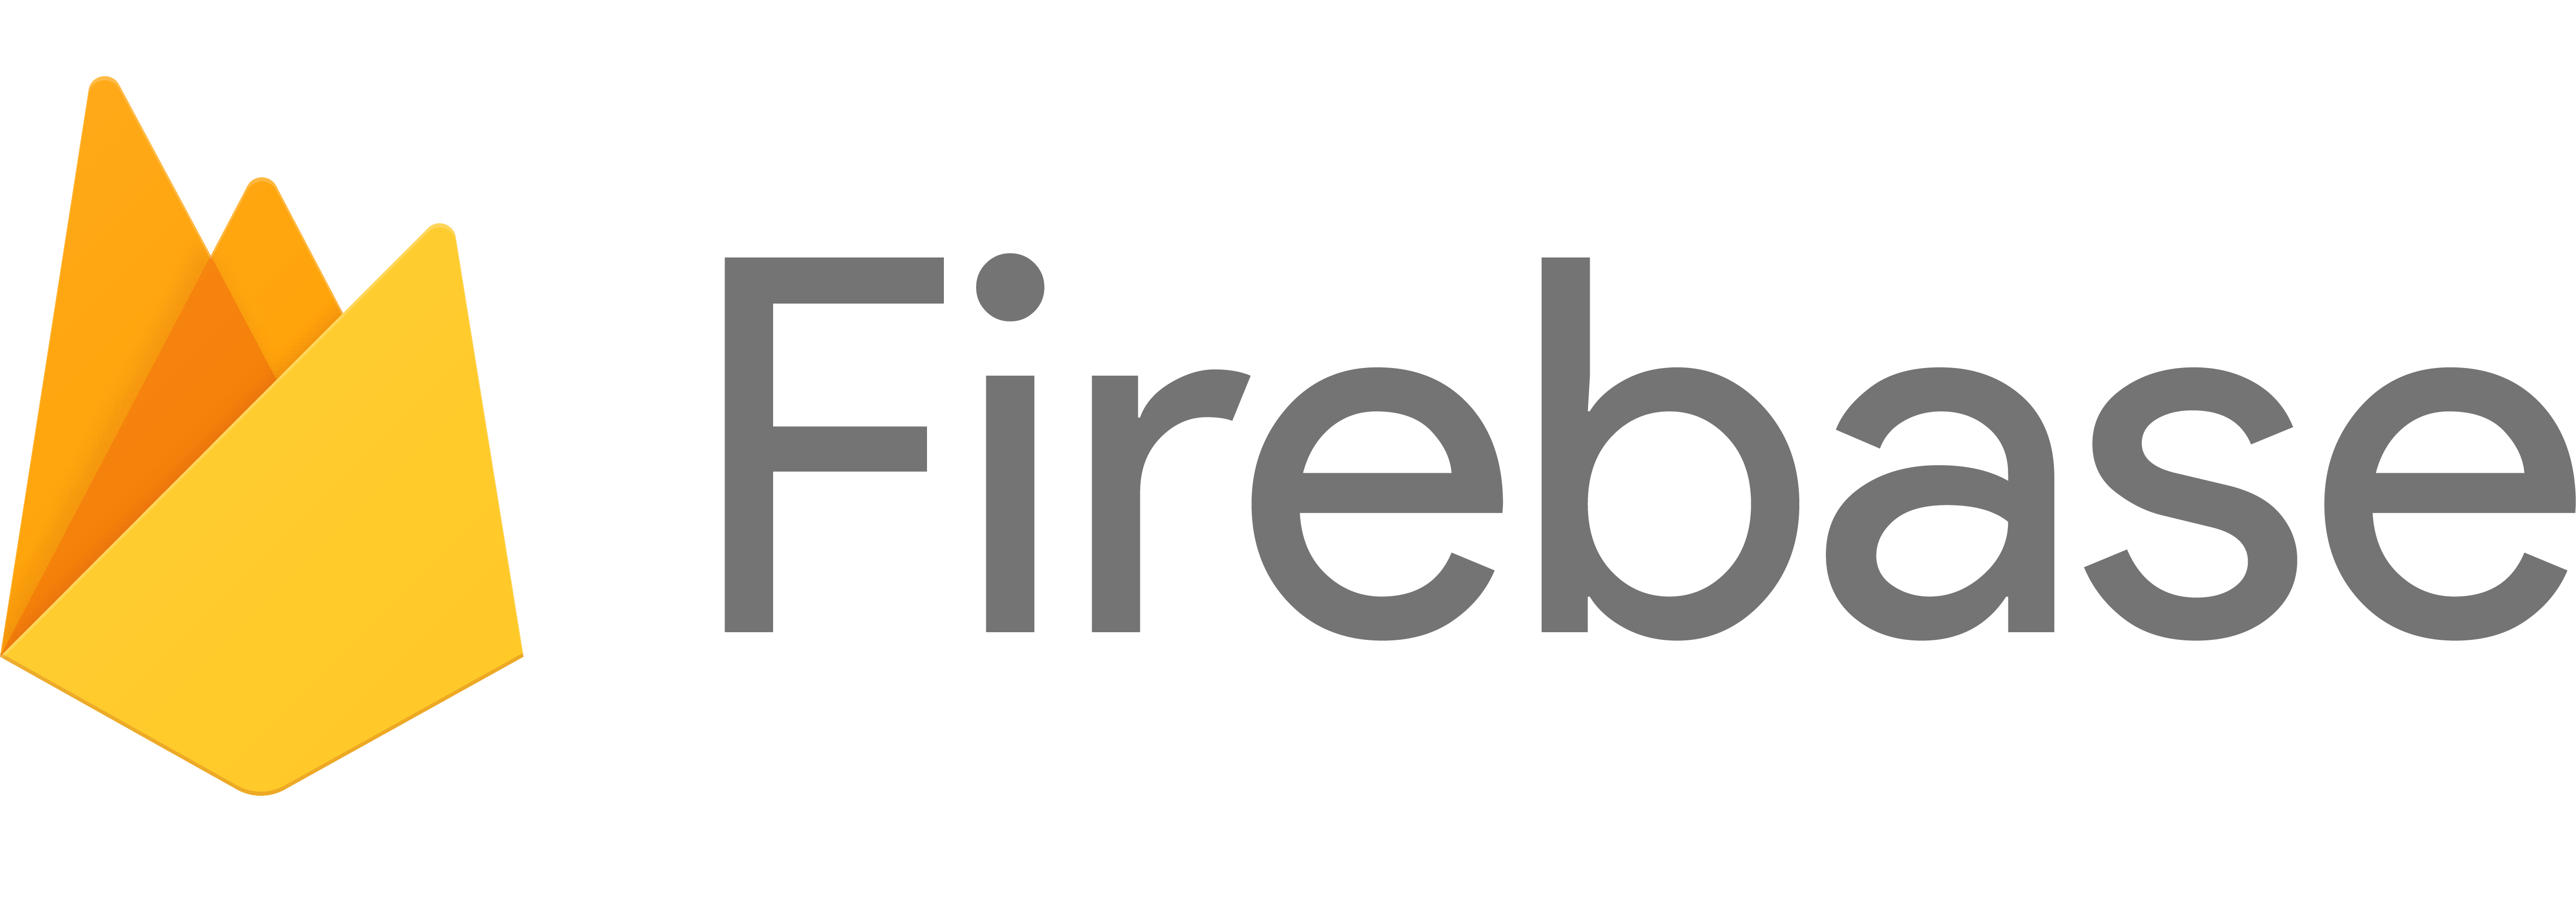 Firebase Logo - Introducing a new gold sponsor: Firebase - Appdevcon